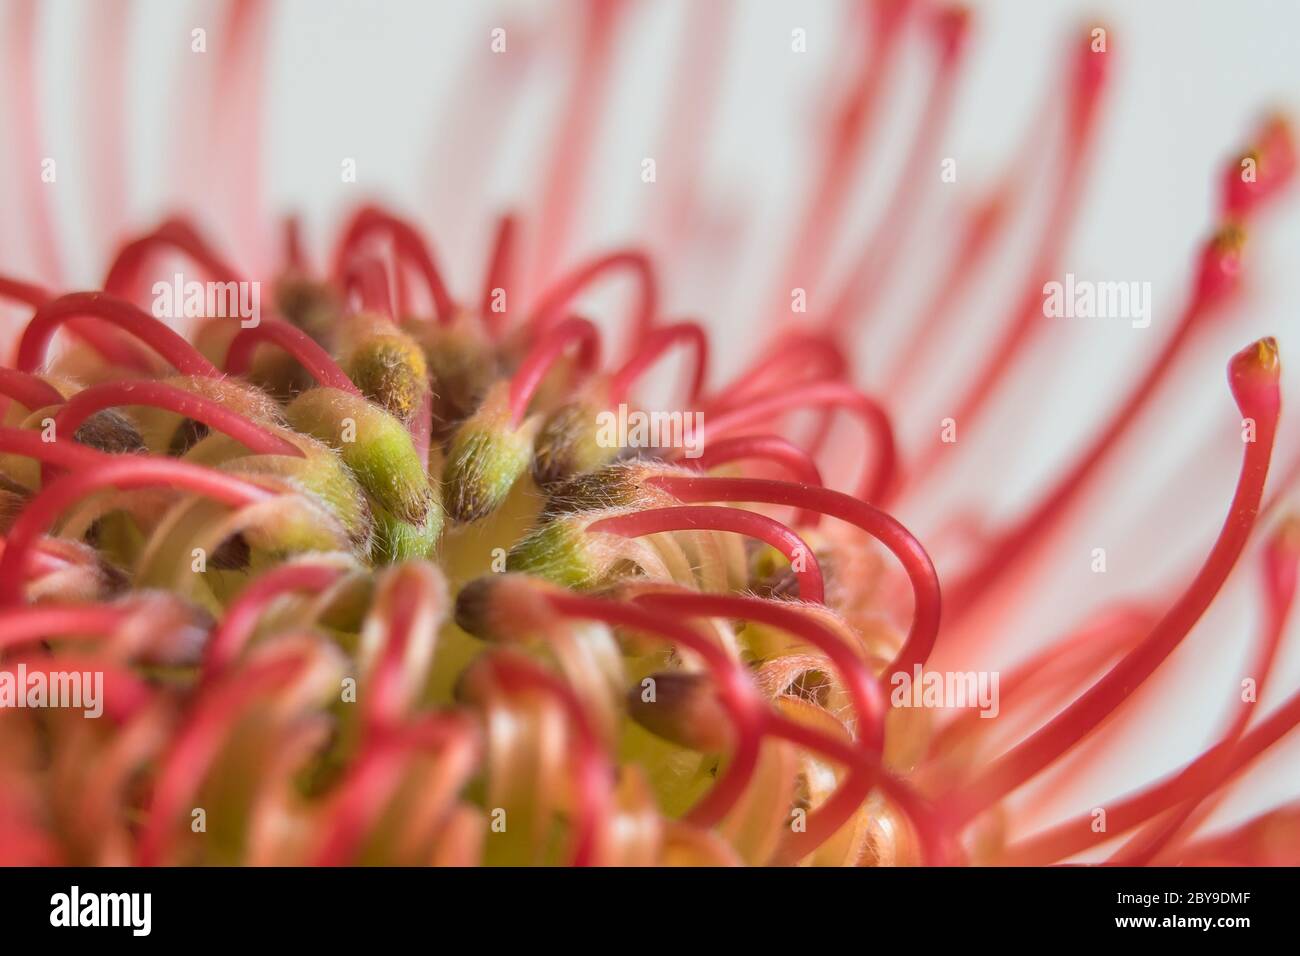 Makro-Opname van een Rode protea-bloem. Stockfoto